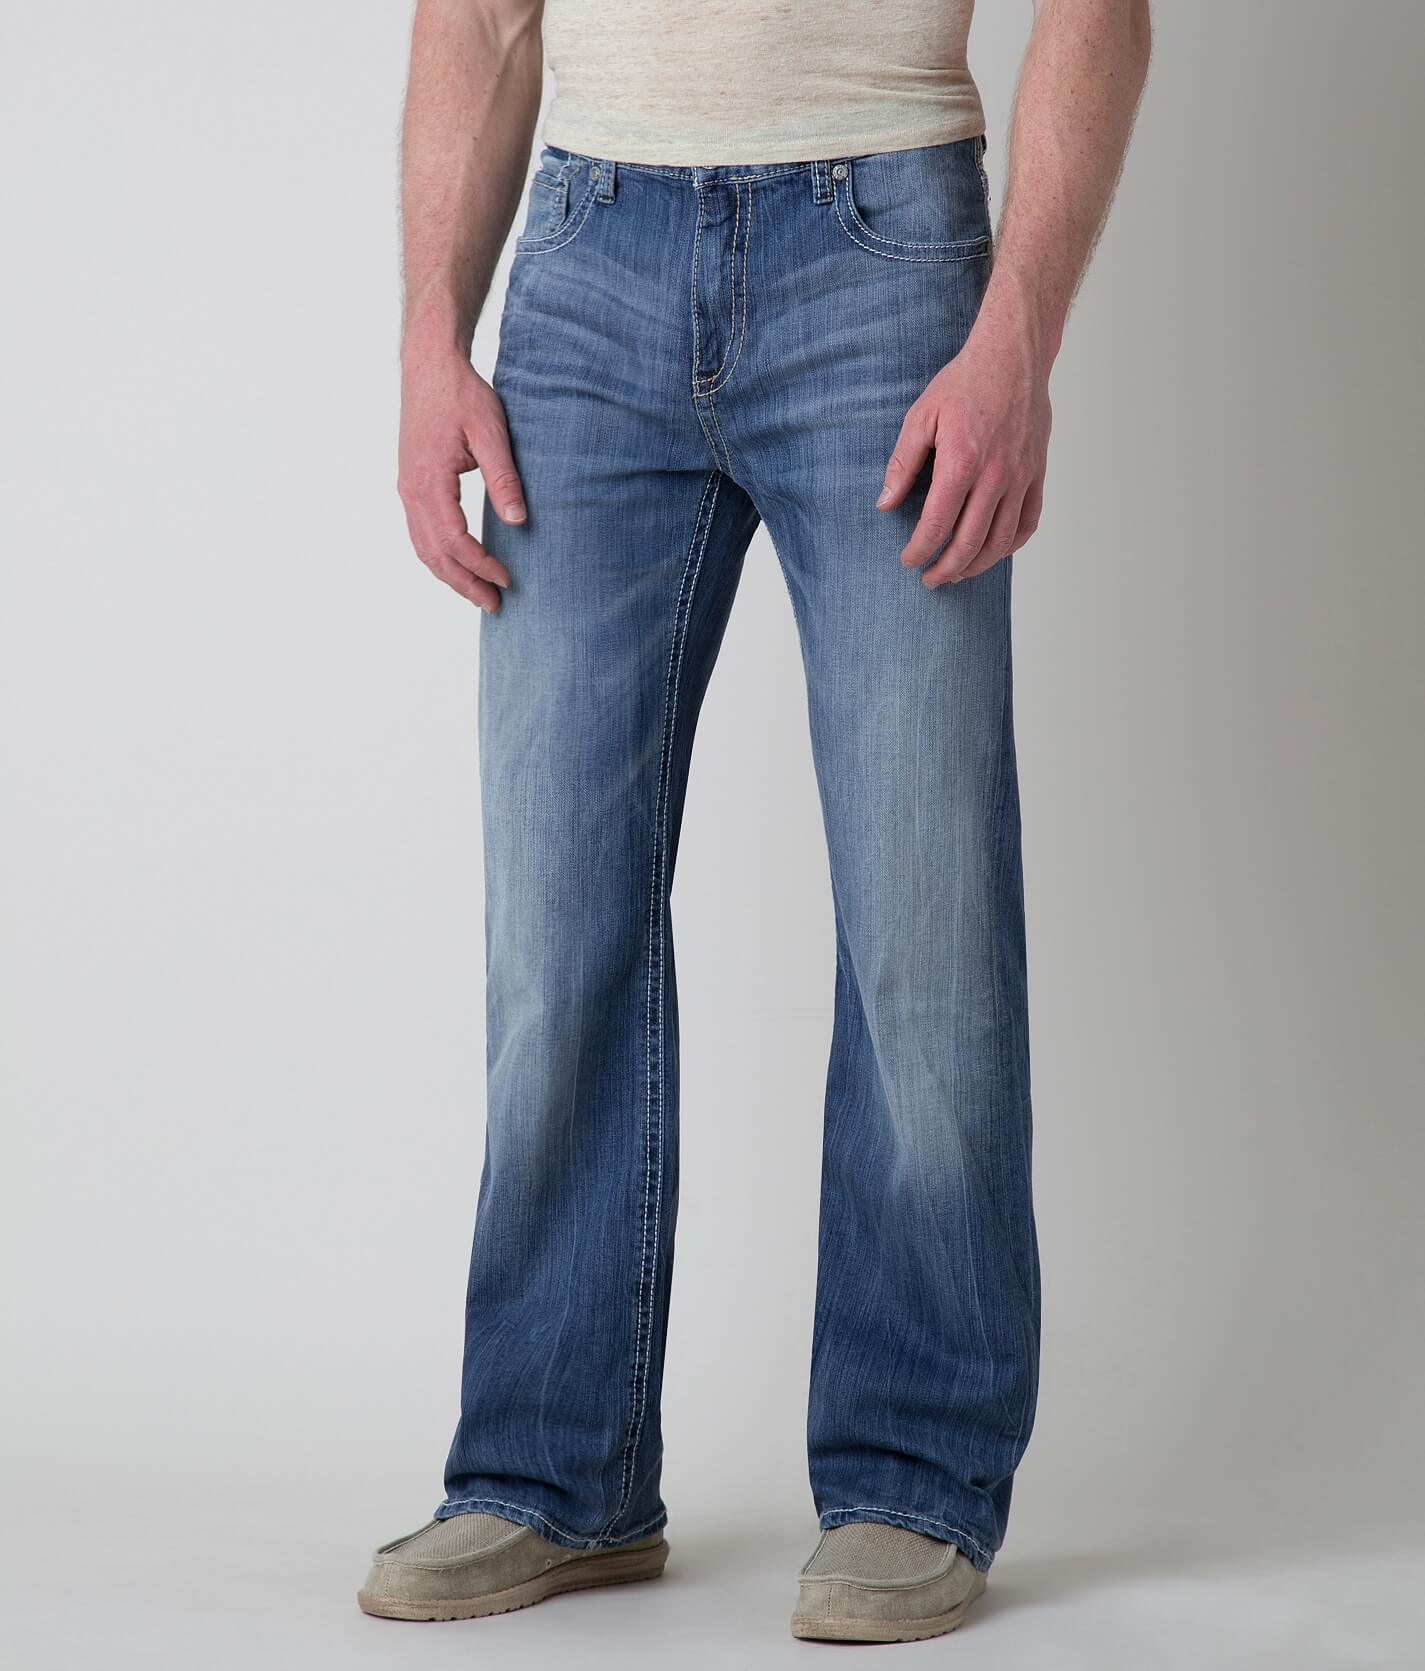 buckle bke tyler jeans